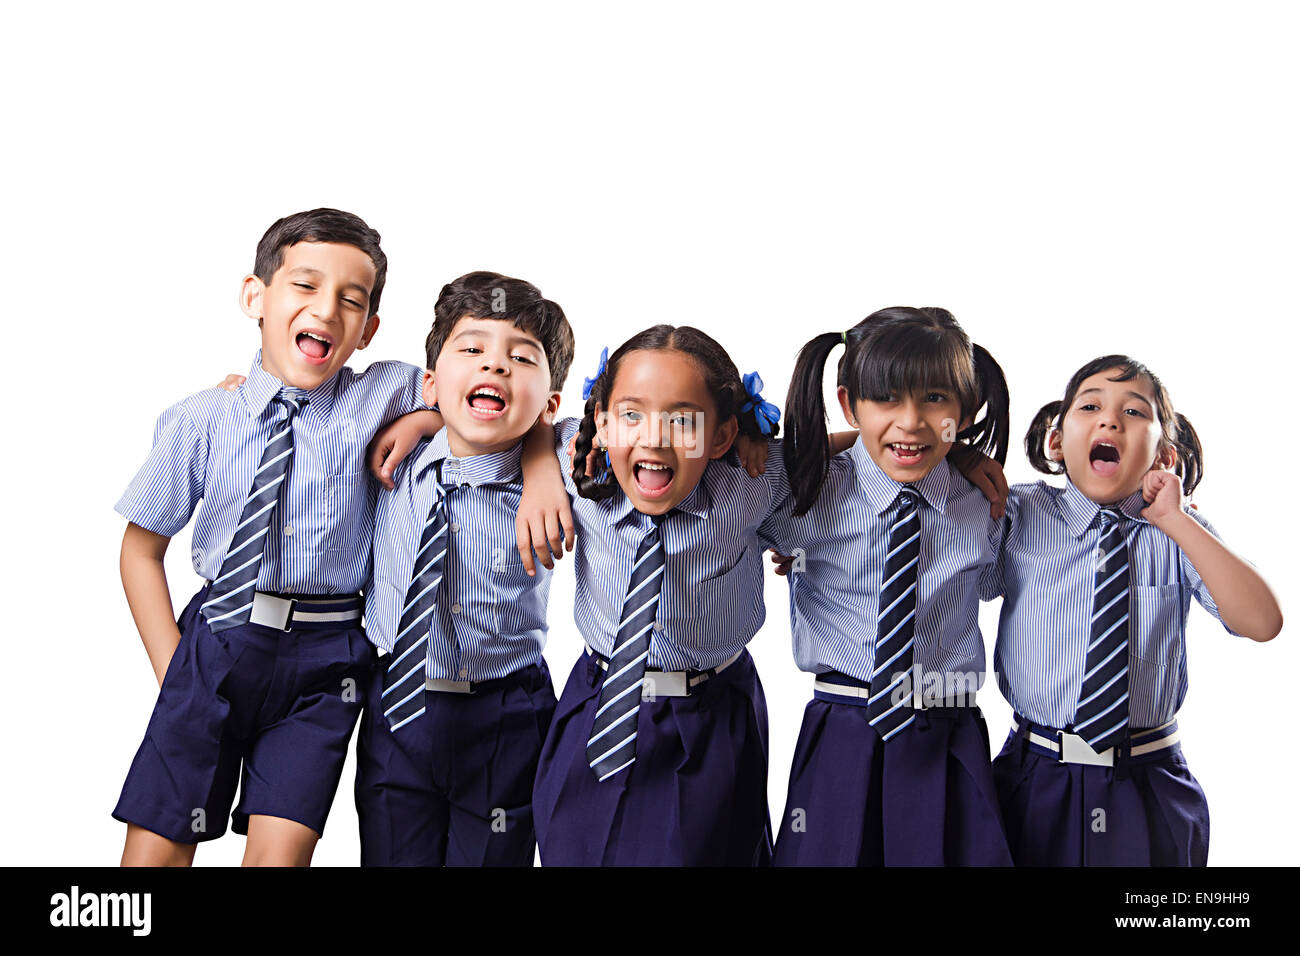 Les enfants de l'école amis indiens groupe étudiant fun Banque D'Images